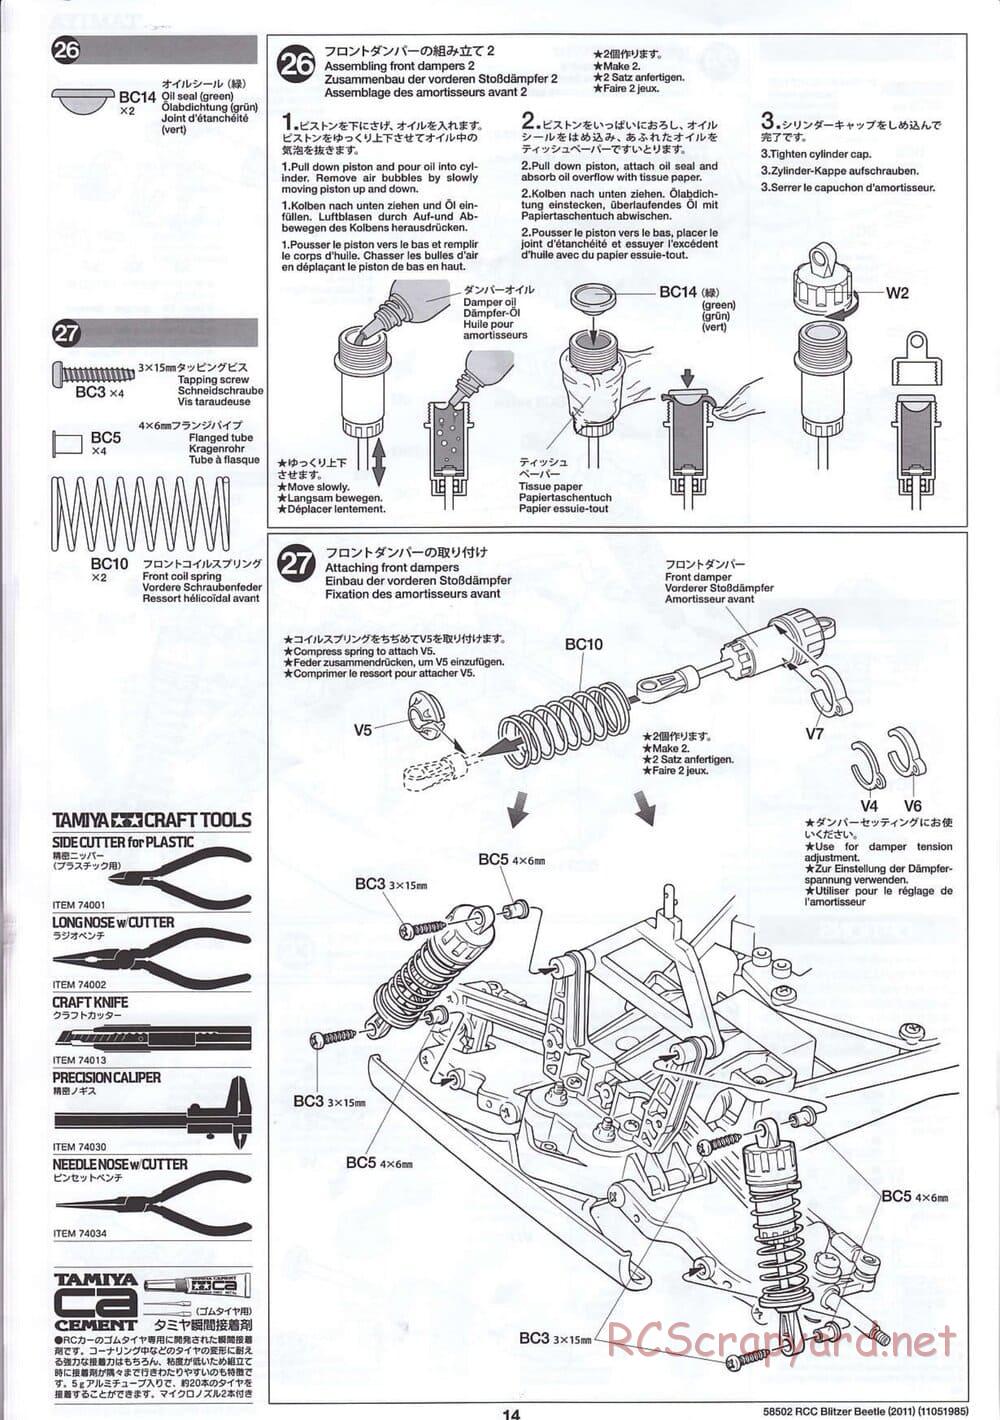 Tamiya - Blitzer Beetle 2011 - FAL Chassis - Manual - Page 14